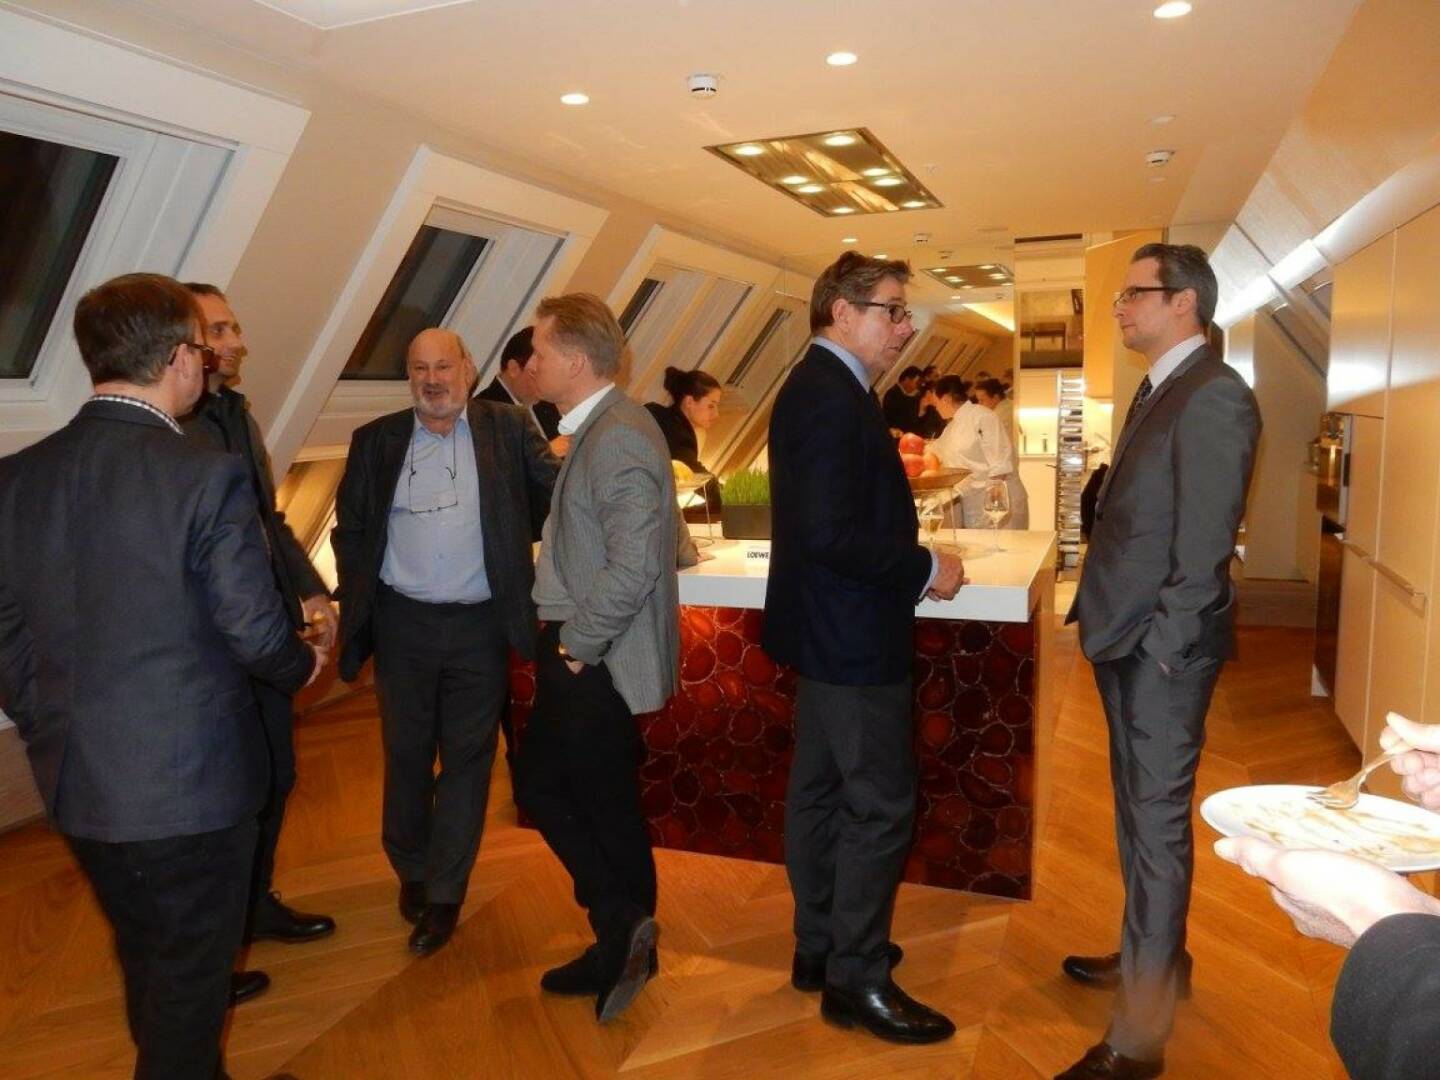 LOEWE-PK im Park Hyatt, Jänner 2016: Am 14.1. fand im exklusiven Rahmen des Park Hyatt Vienna die LOEWE-Pressekonferenz zum Neustart des Unternehmens statt. Zahlreiche Medienvertreter sowie LOEWE Galeristen waren bei der Präsentation in der Royal Penthouse Suite anwesend.